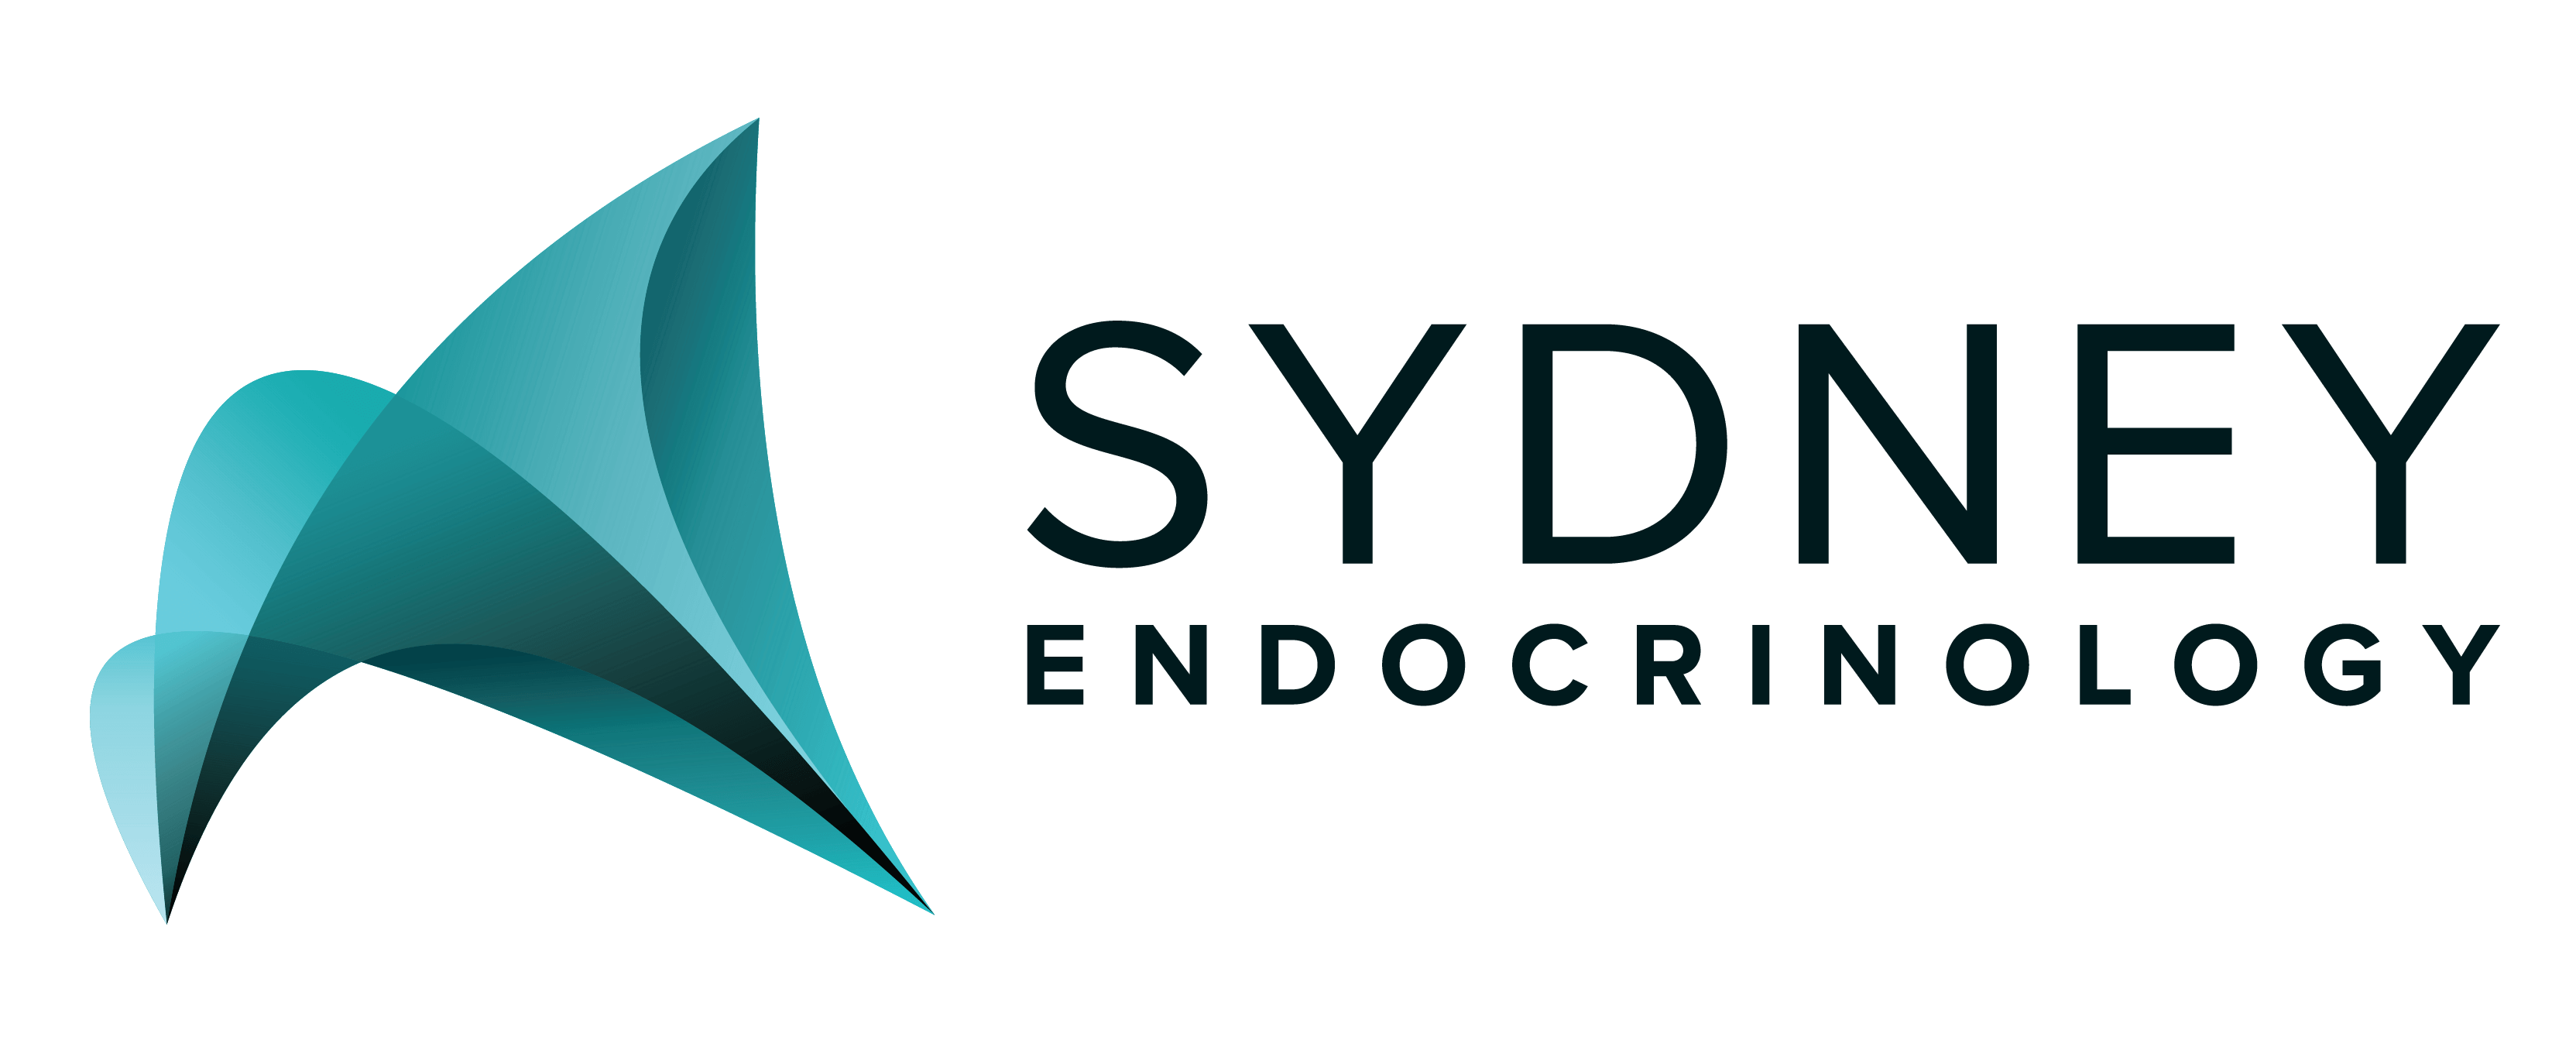 Endocrinology Logo - Sydney Endocrinology | Multidiscplinary Management of Diabetes ...